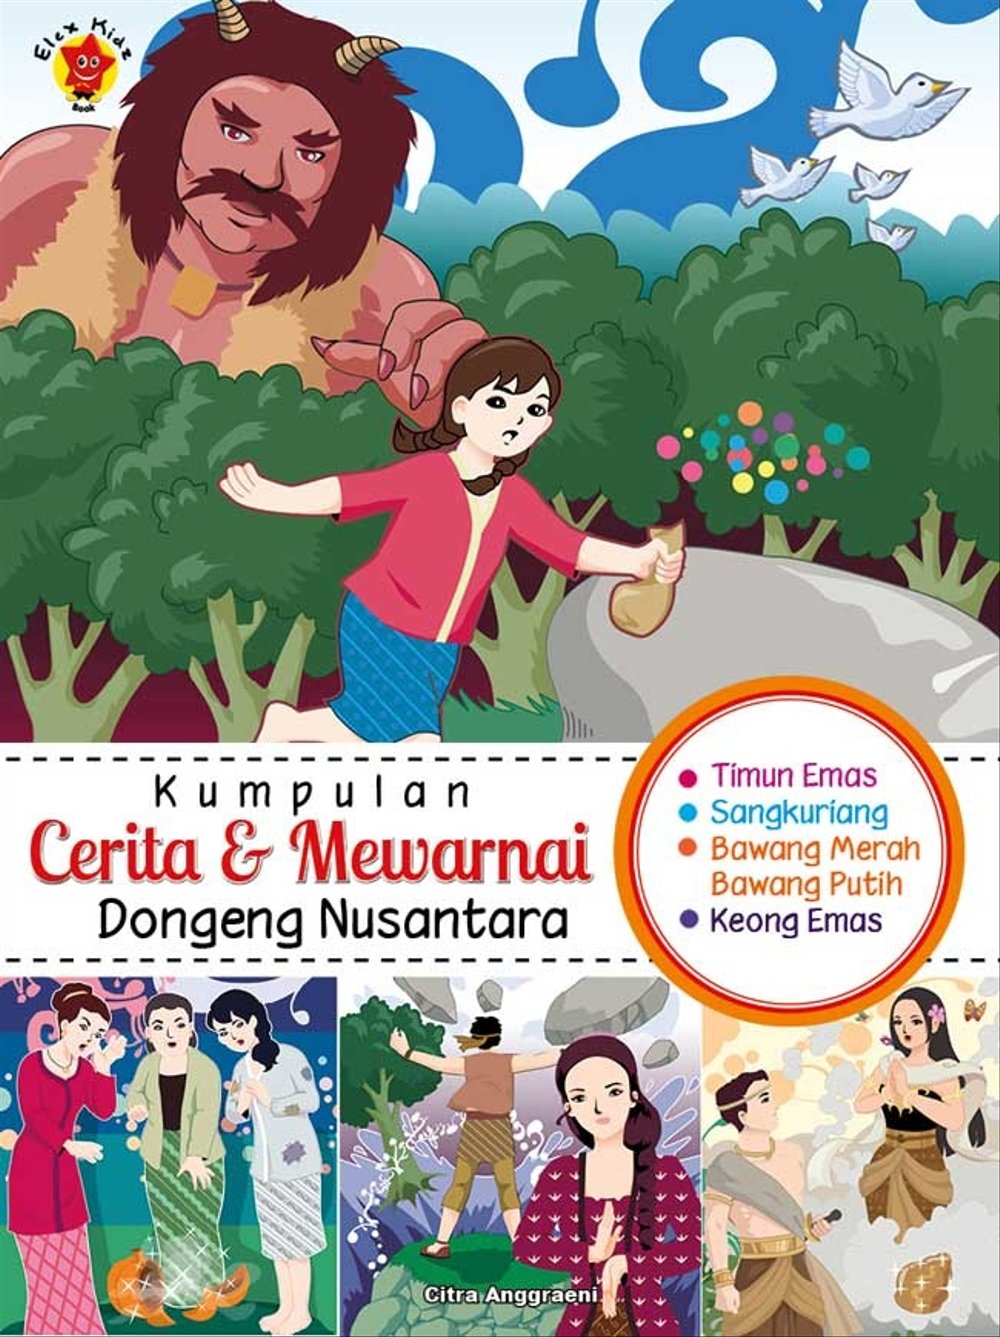 Kumpulan Cerita & Mewarnai Dongeng Nusantara